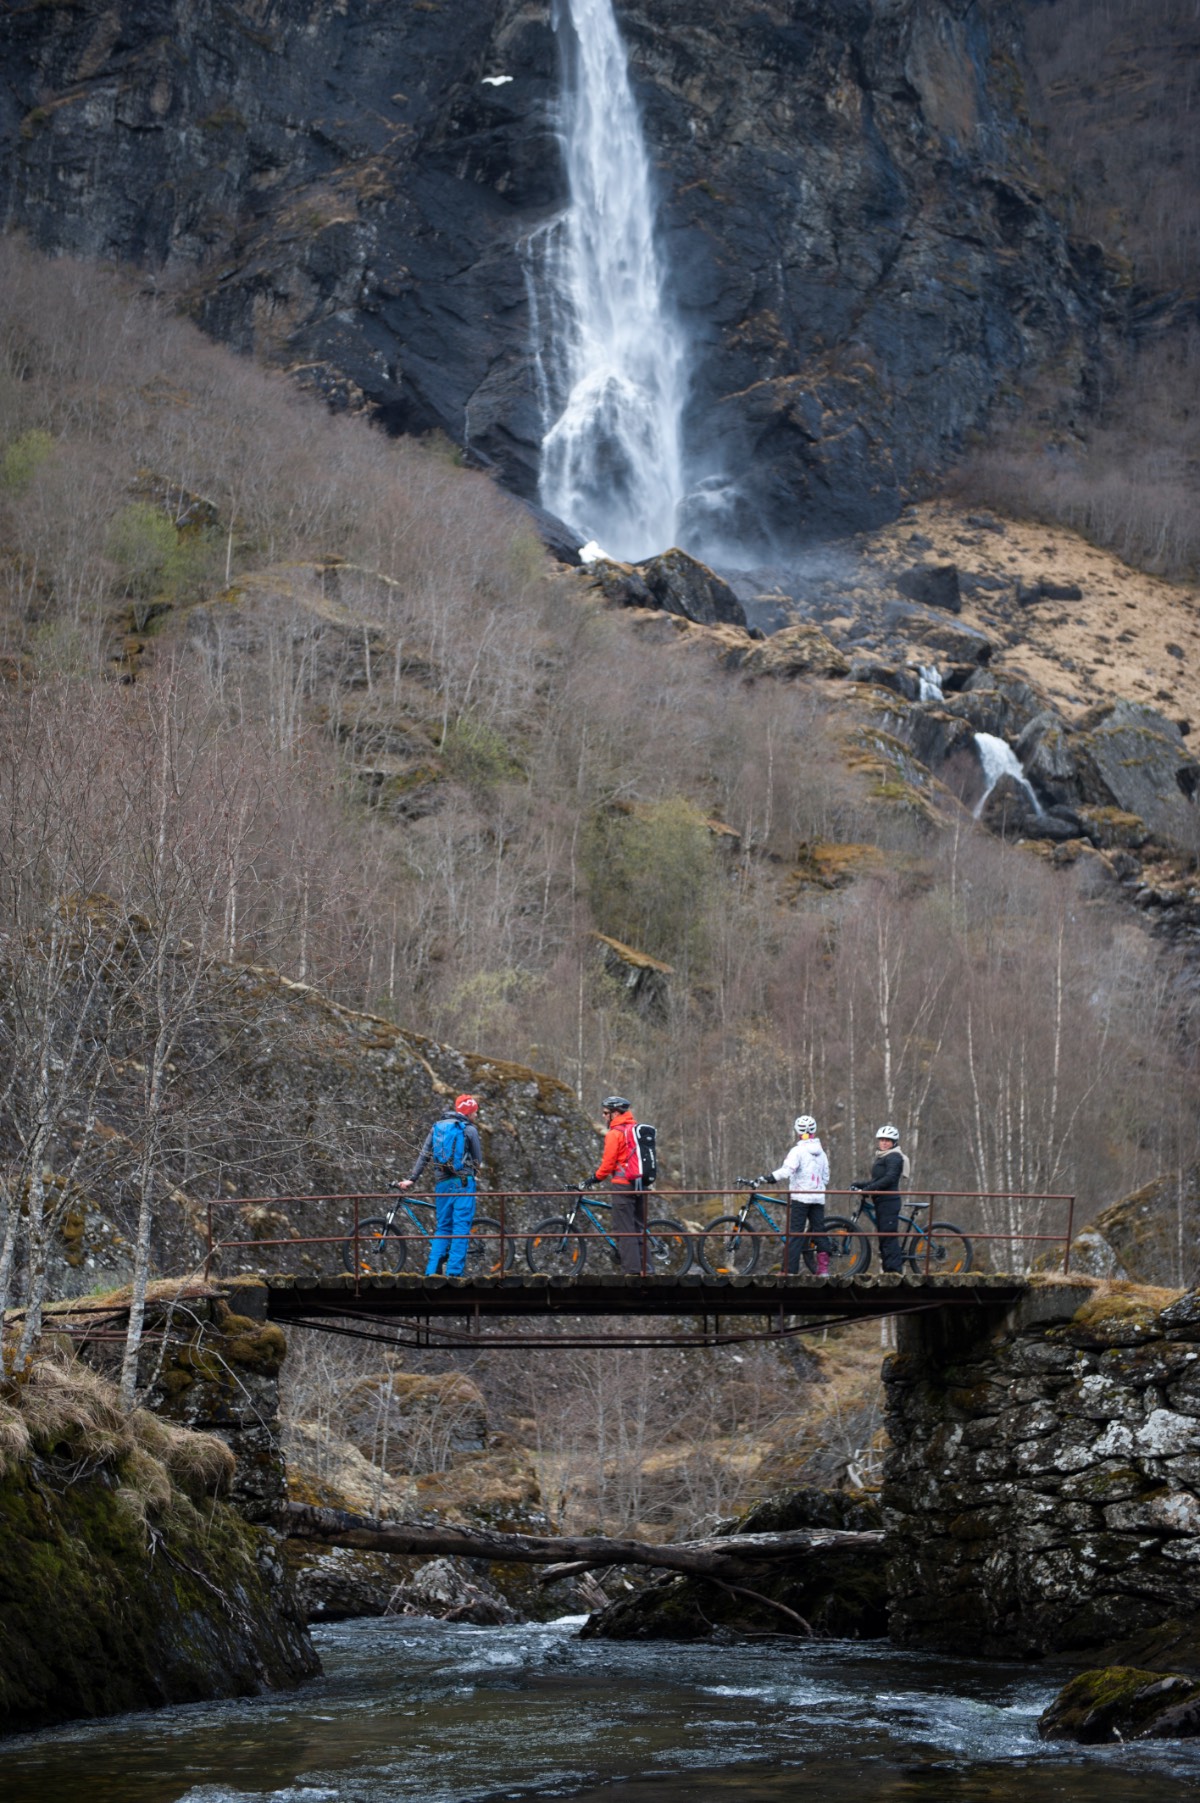 Noorwegen_Langs watervallen op de fiets 1